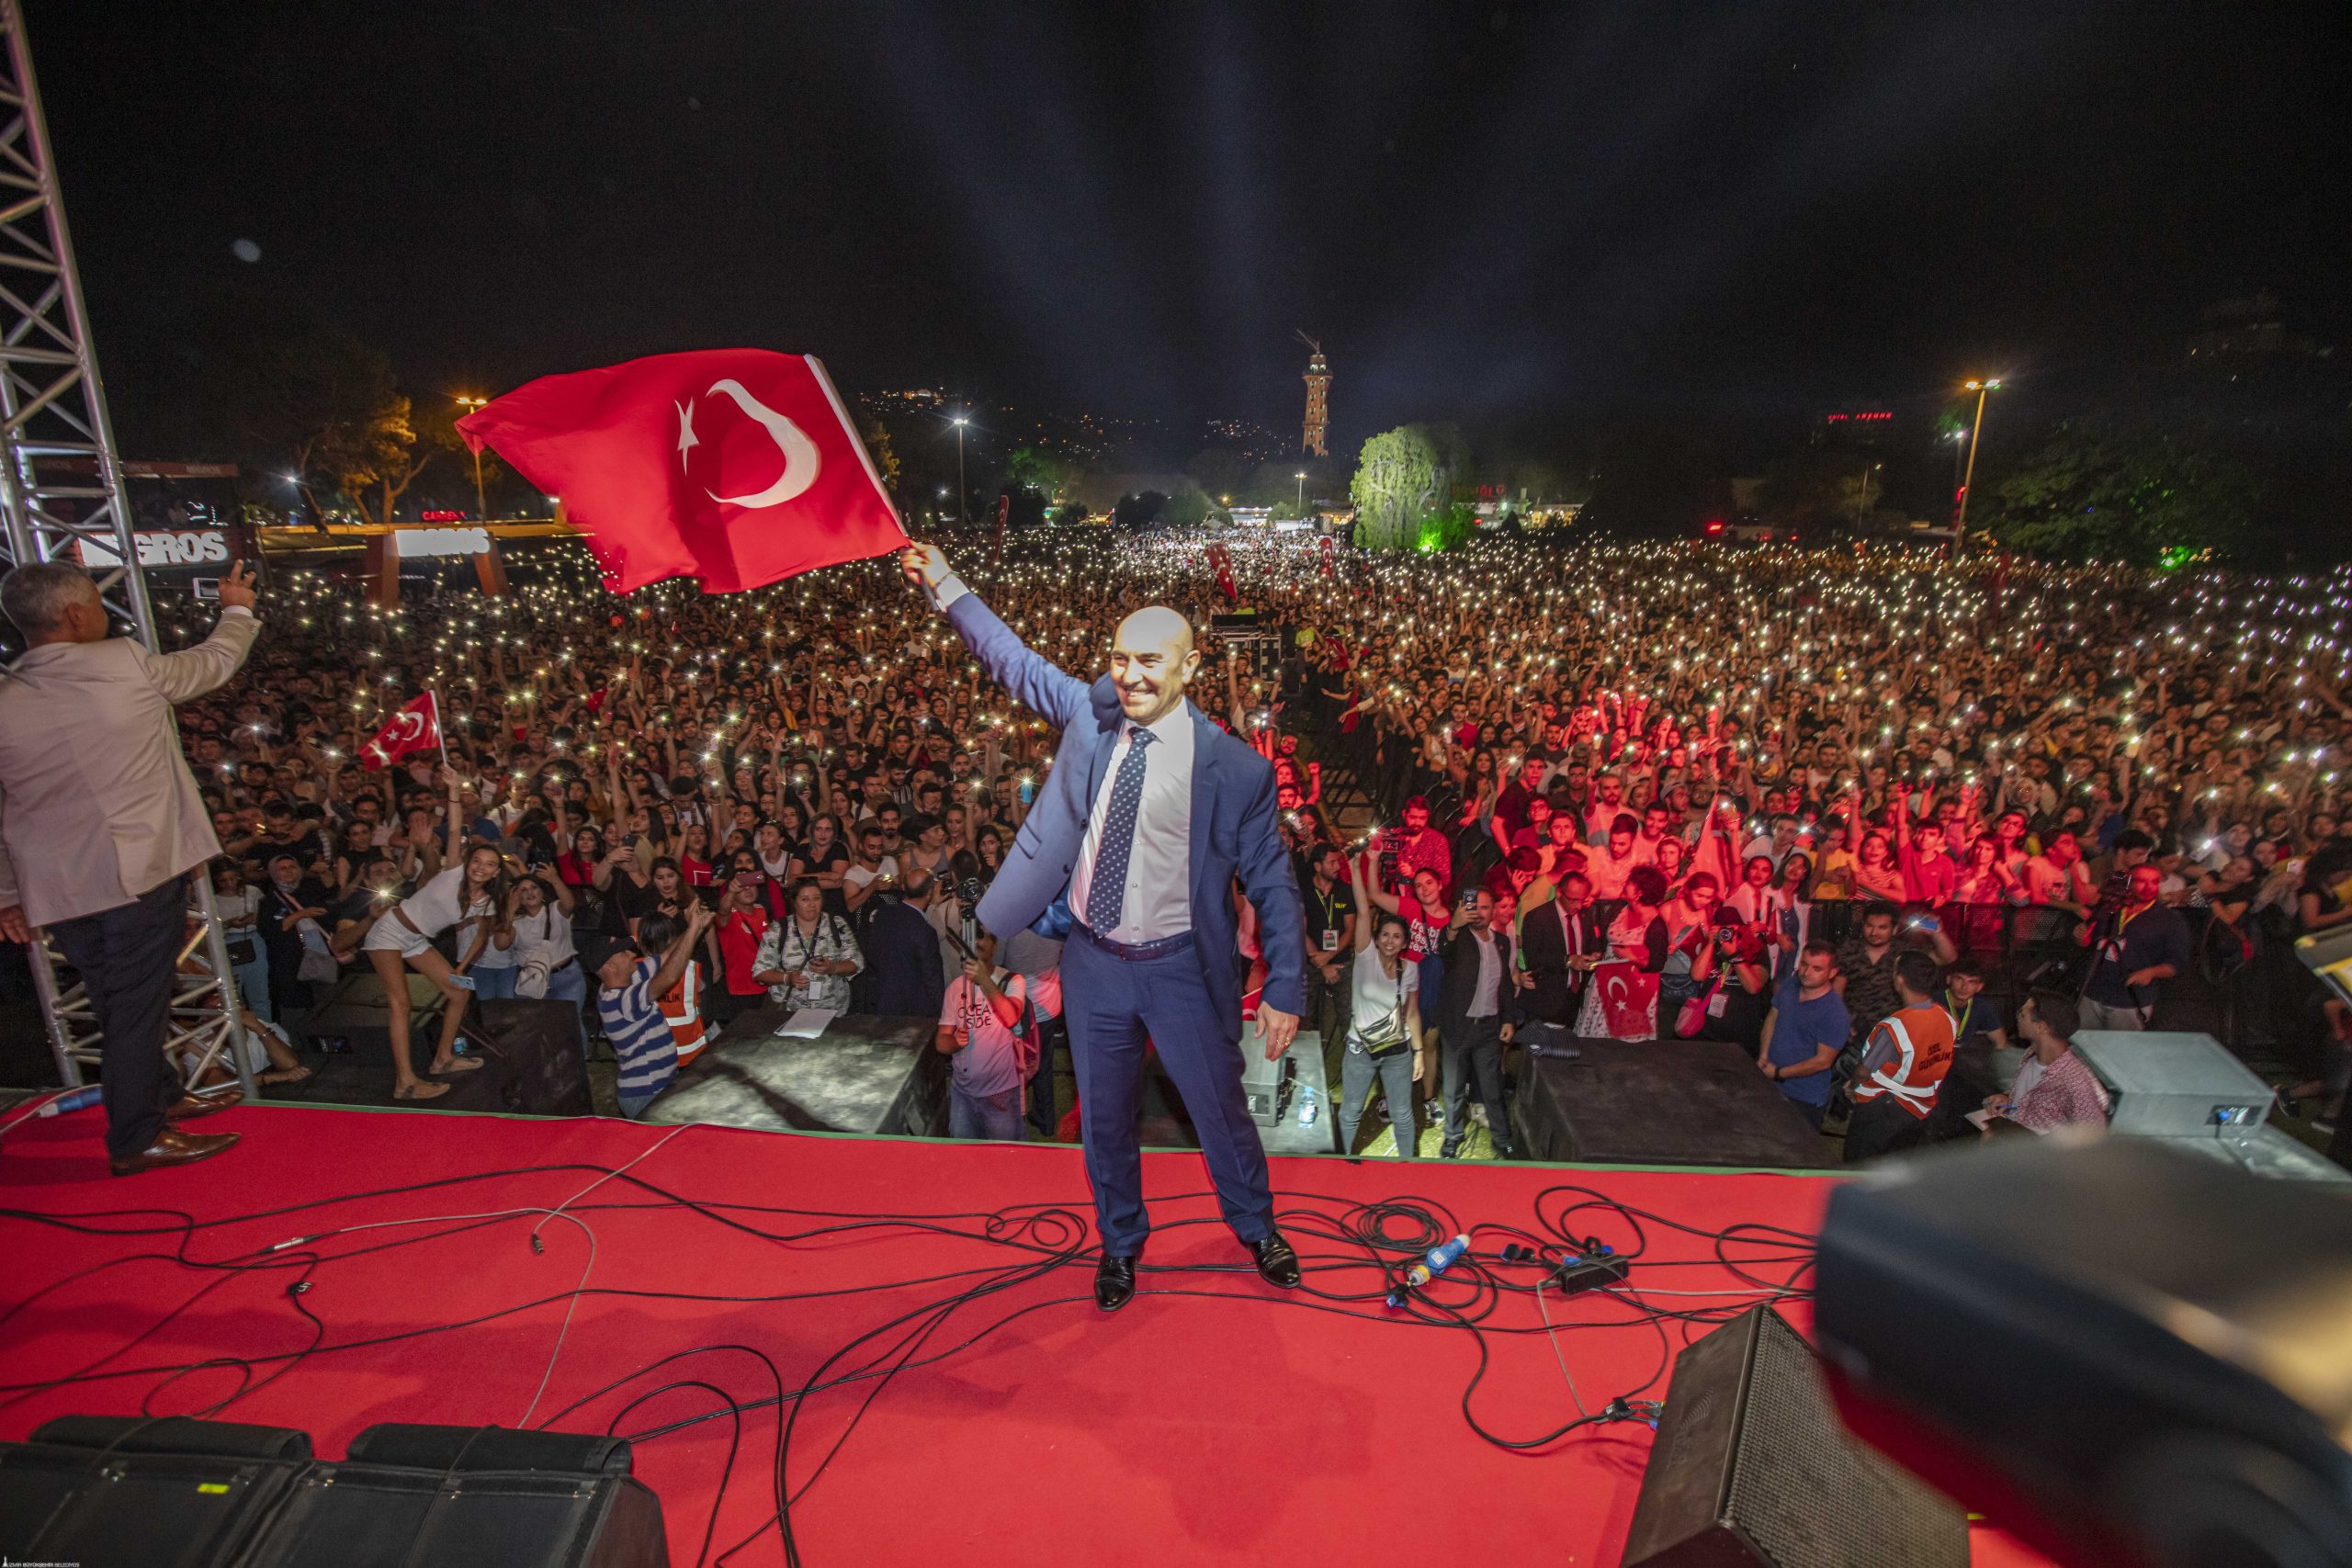 29 ekim İzmir Büyükşehir Belediye Başkanı Tunç Soyer, 29 ekim Cumhuriyet Bayramı ile ilgili basın açıklamalarında bulundu. Soyer açıklamalarında şu sözlere yer verdi: